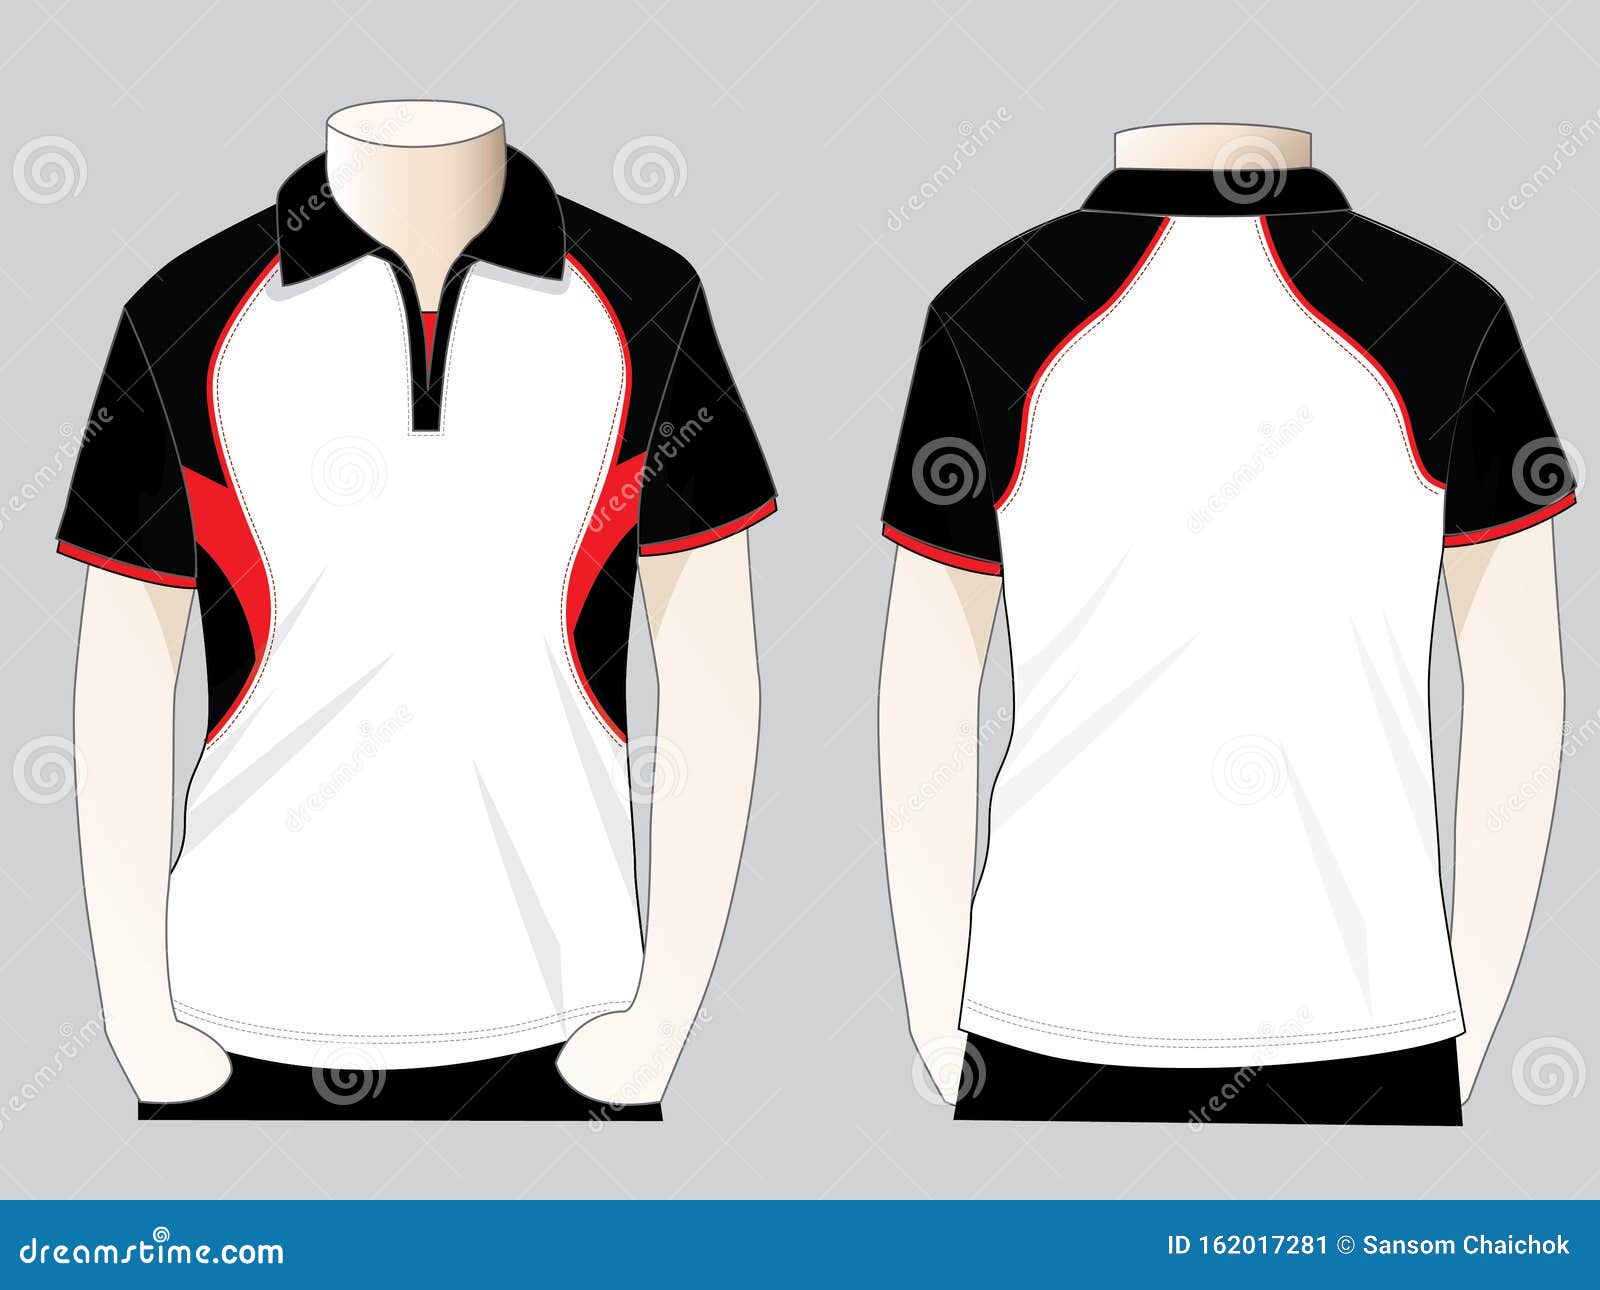 Slope Shoulder Polo Shirt Design Vector Stock Illustration ...